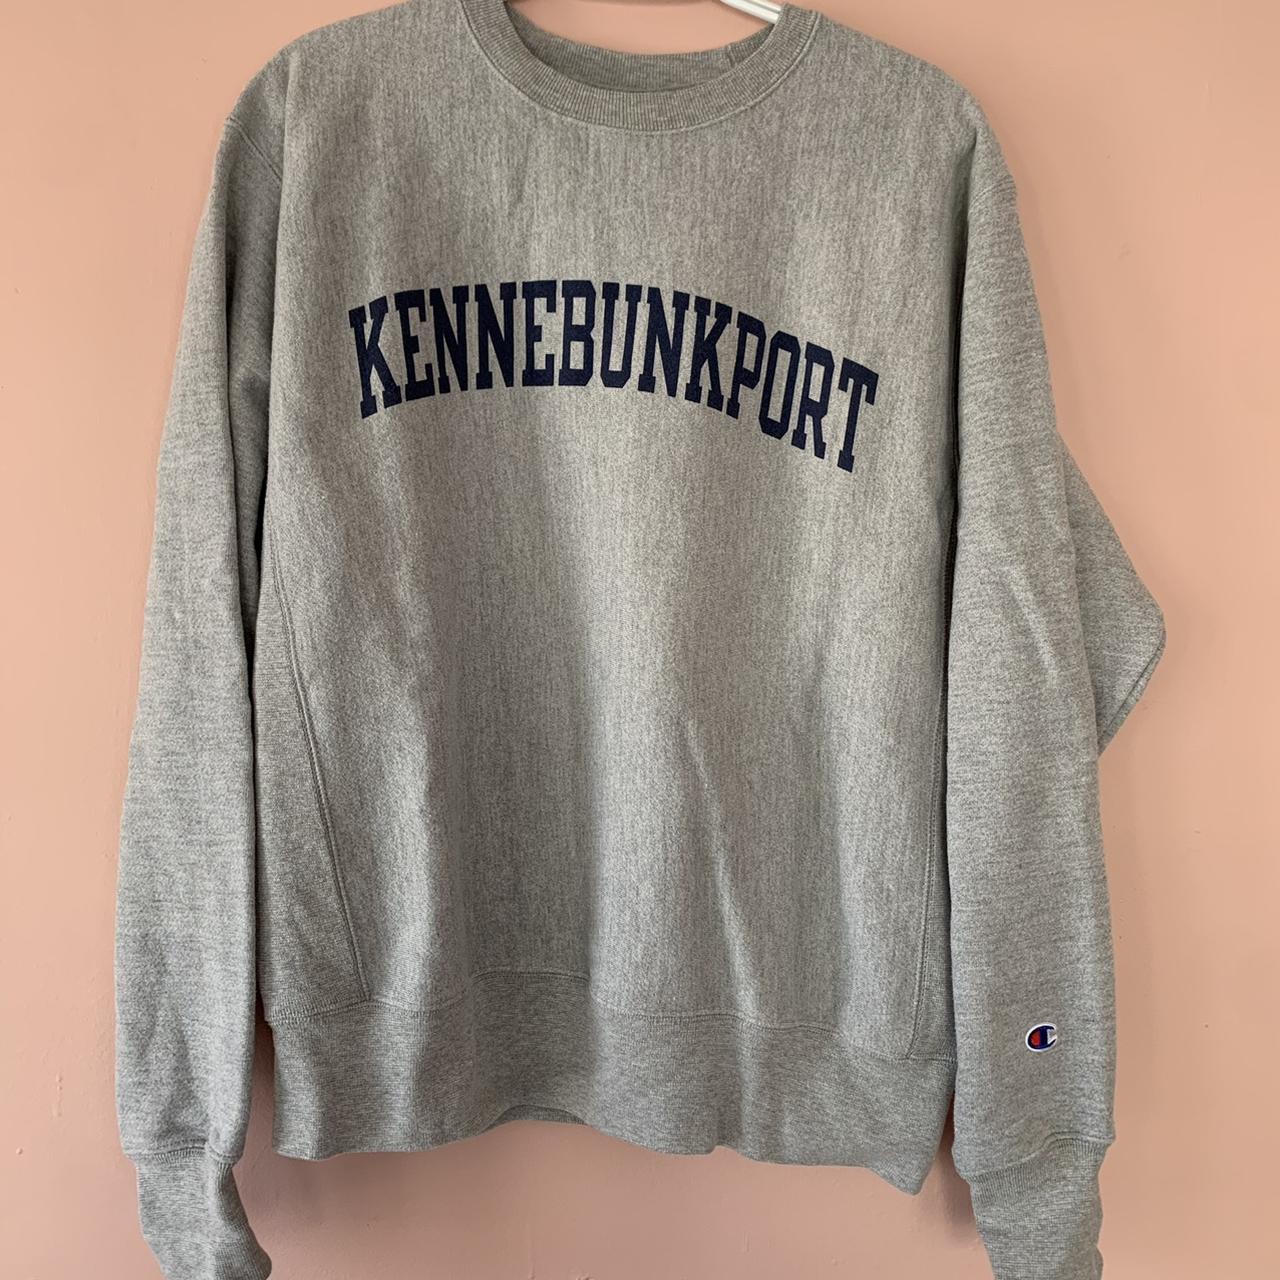 Vintage Kennebunkport crewneck sweatshirt size... - Depop